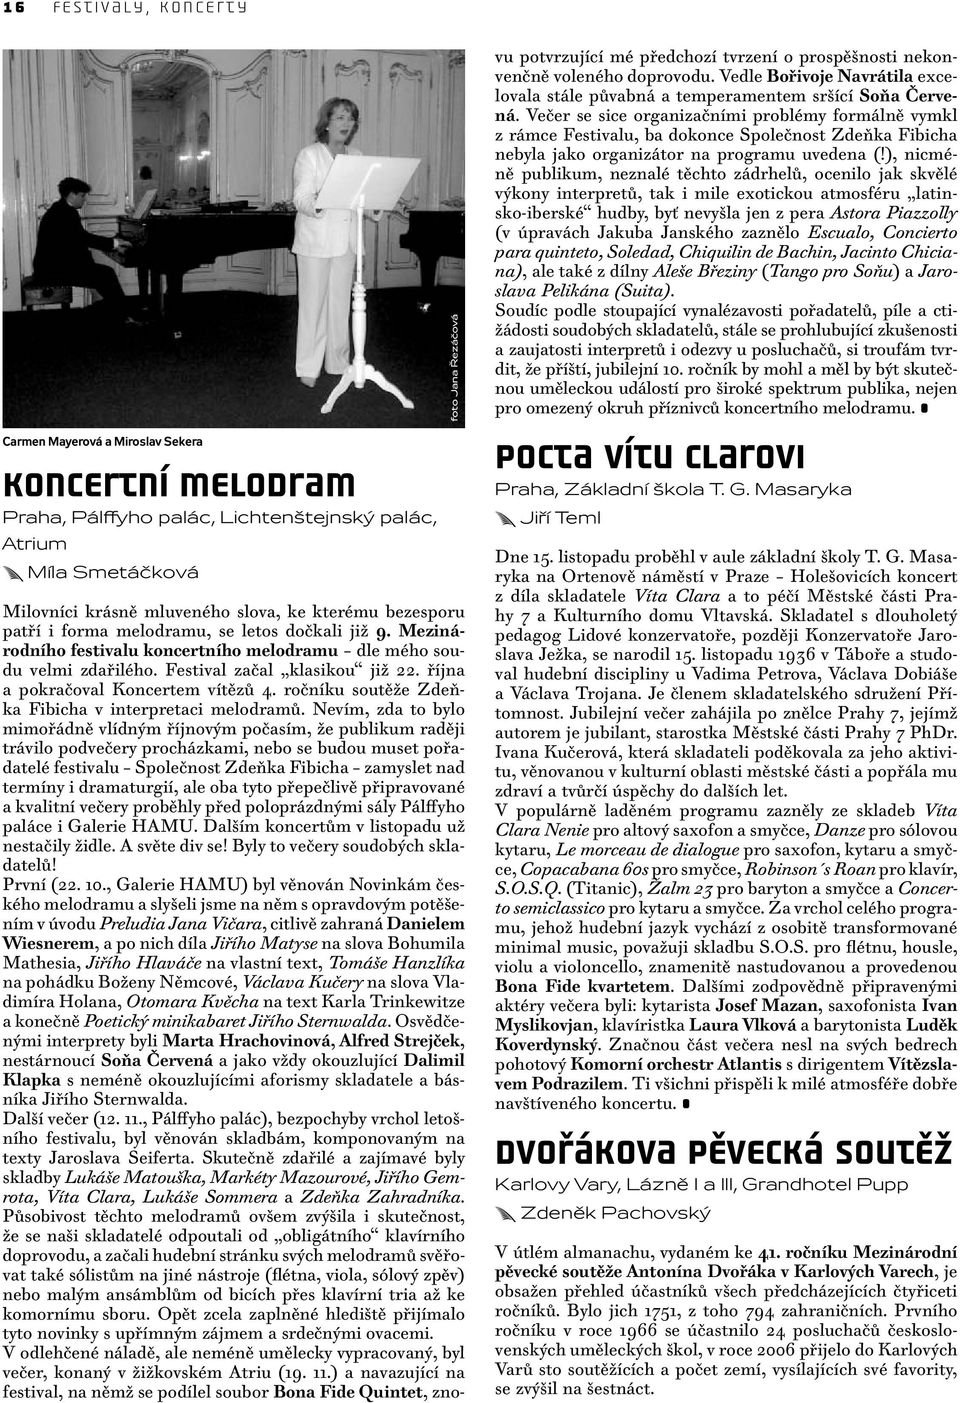 října a pokračoval Koncertem vítězů 4. ročníku soutěže Zdeňka Fibicha v interpretaci melodramů.